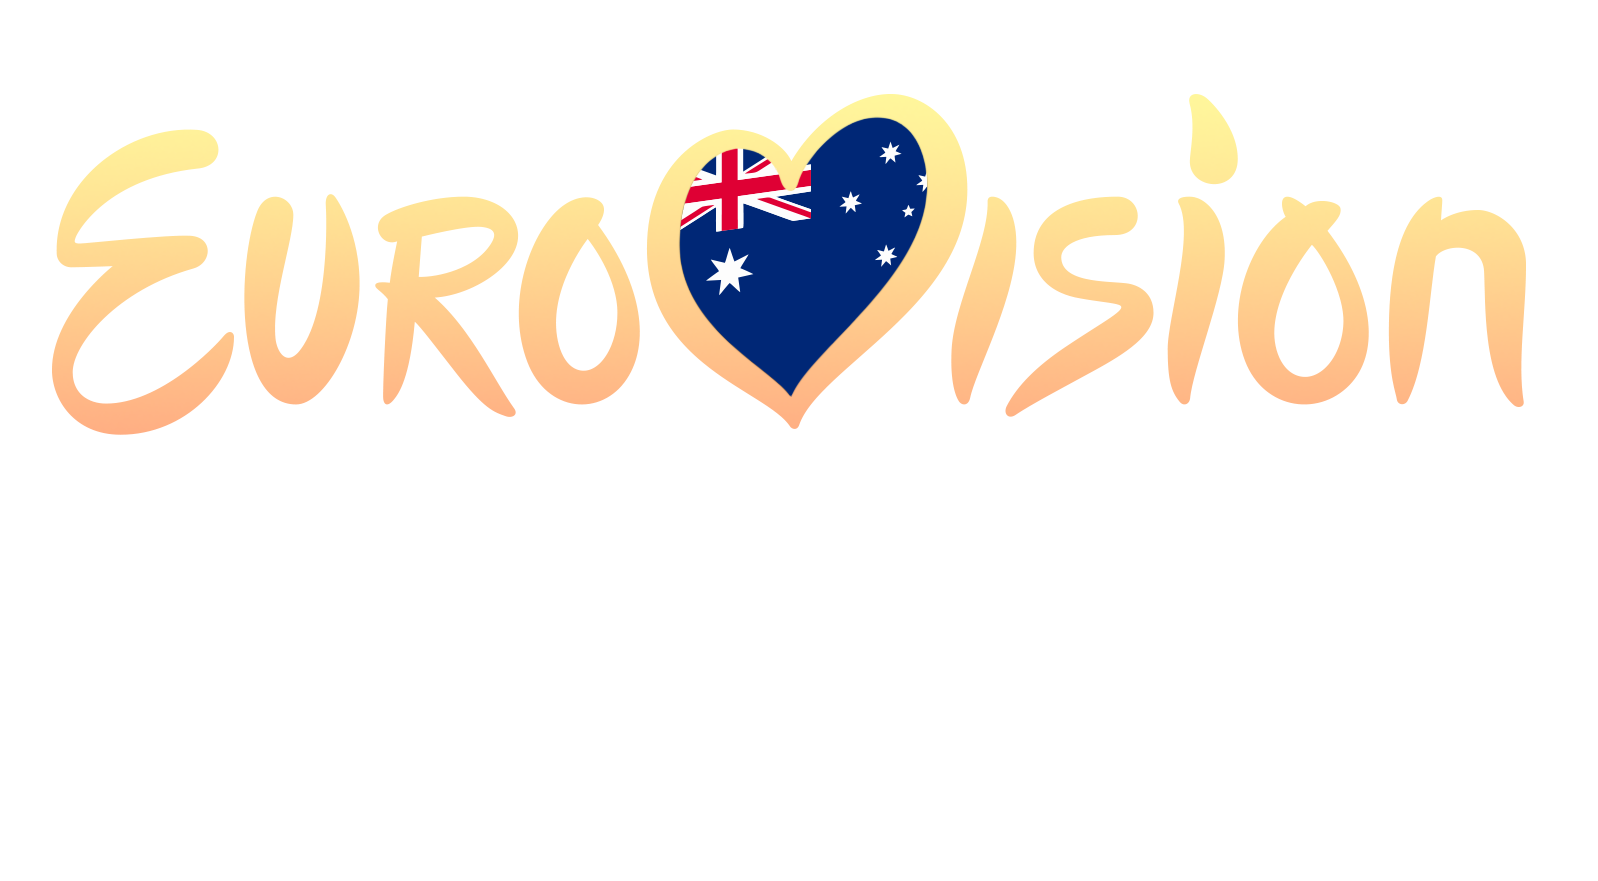 voyage australia eurovision